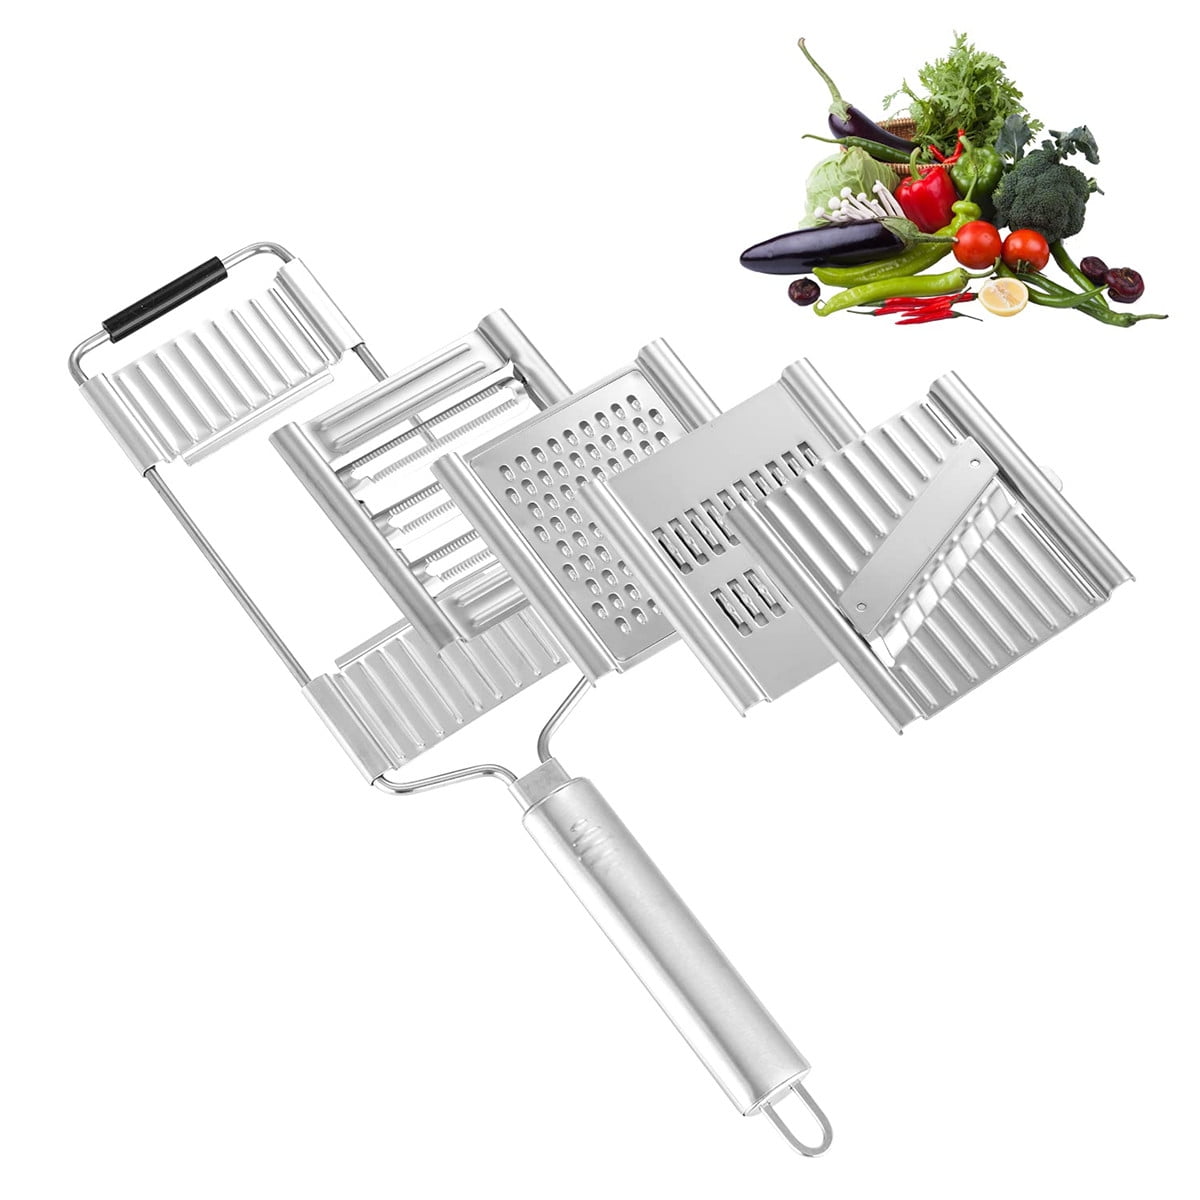  Suuker Vegetable Slicer Set,Stainless Steel Cheese Grater &  Vegetable Chopper with 4 adjustable Blades for Vegetables, Fruits,Hand-held  Shredder Cutter Grater Slicer: Home & Kitchen